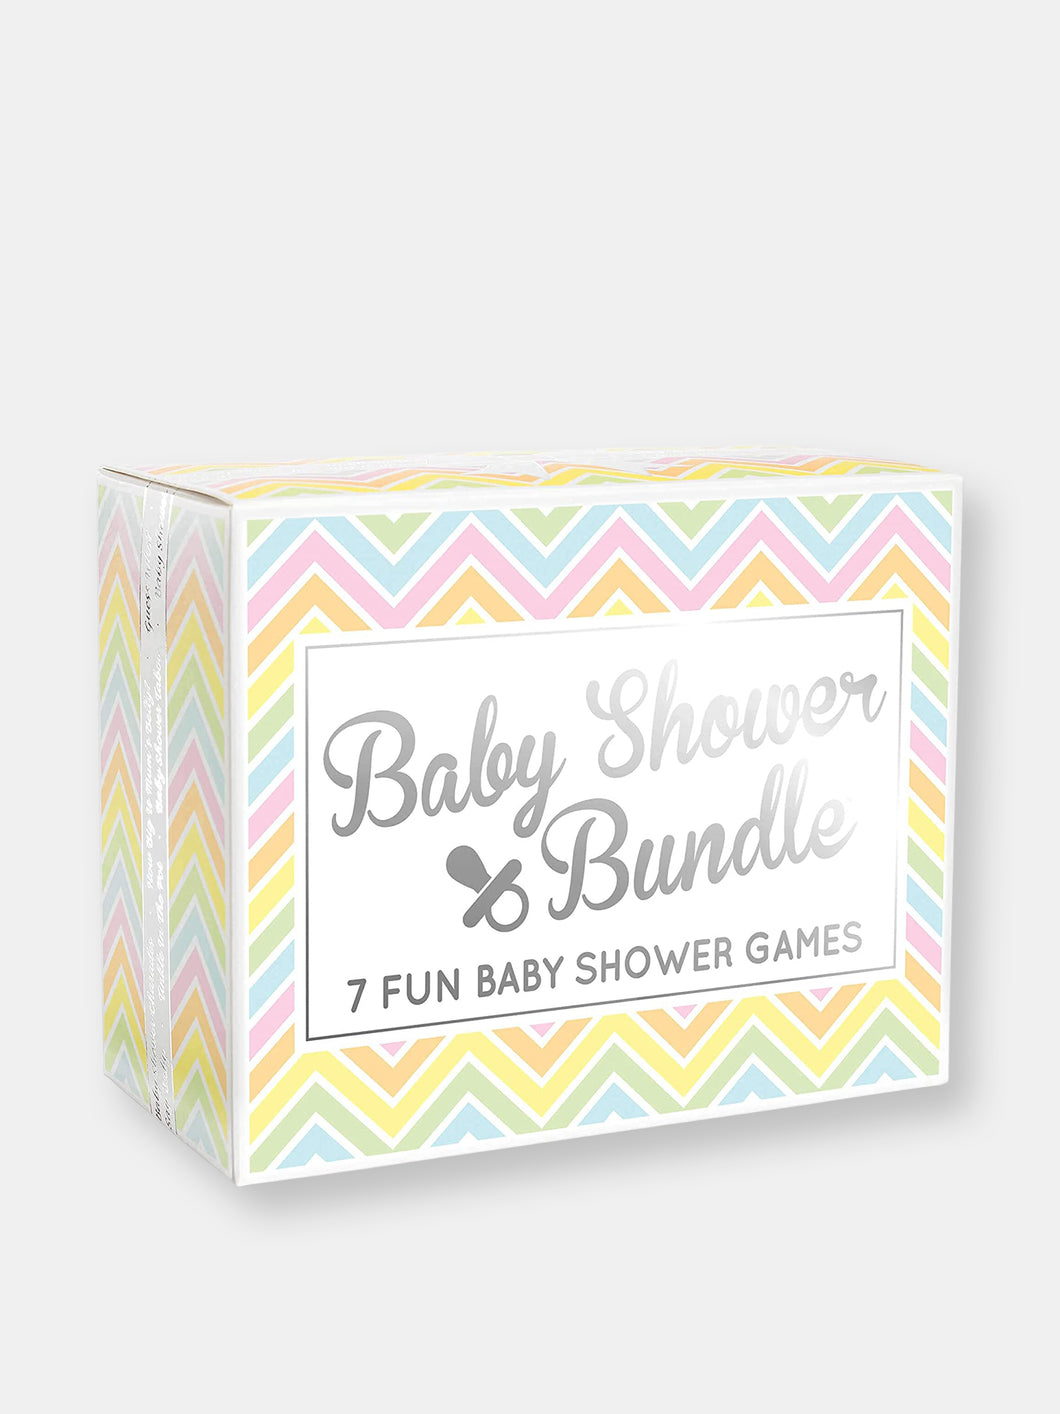 Baby Shower Bundle - 7 Fun Baby Shower Games